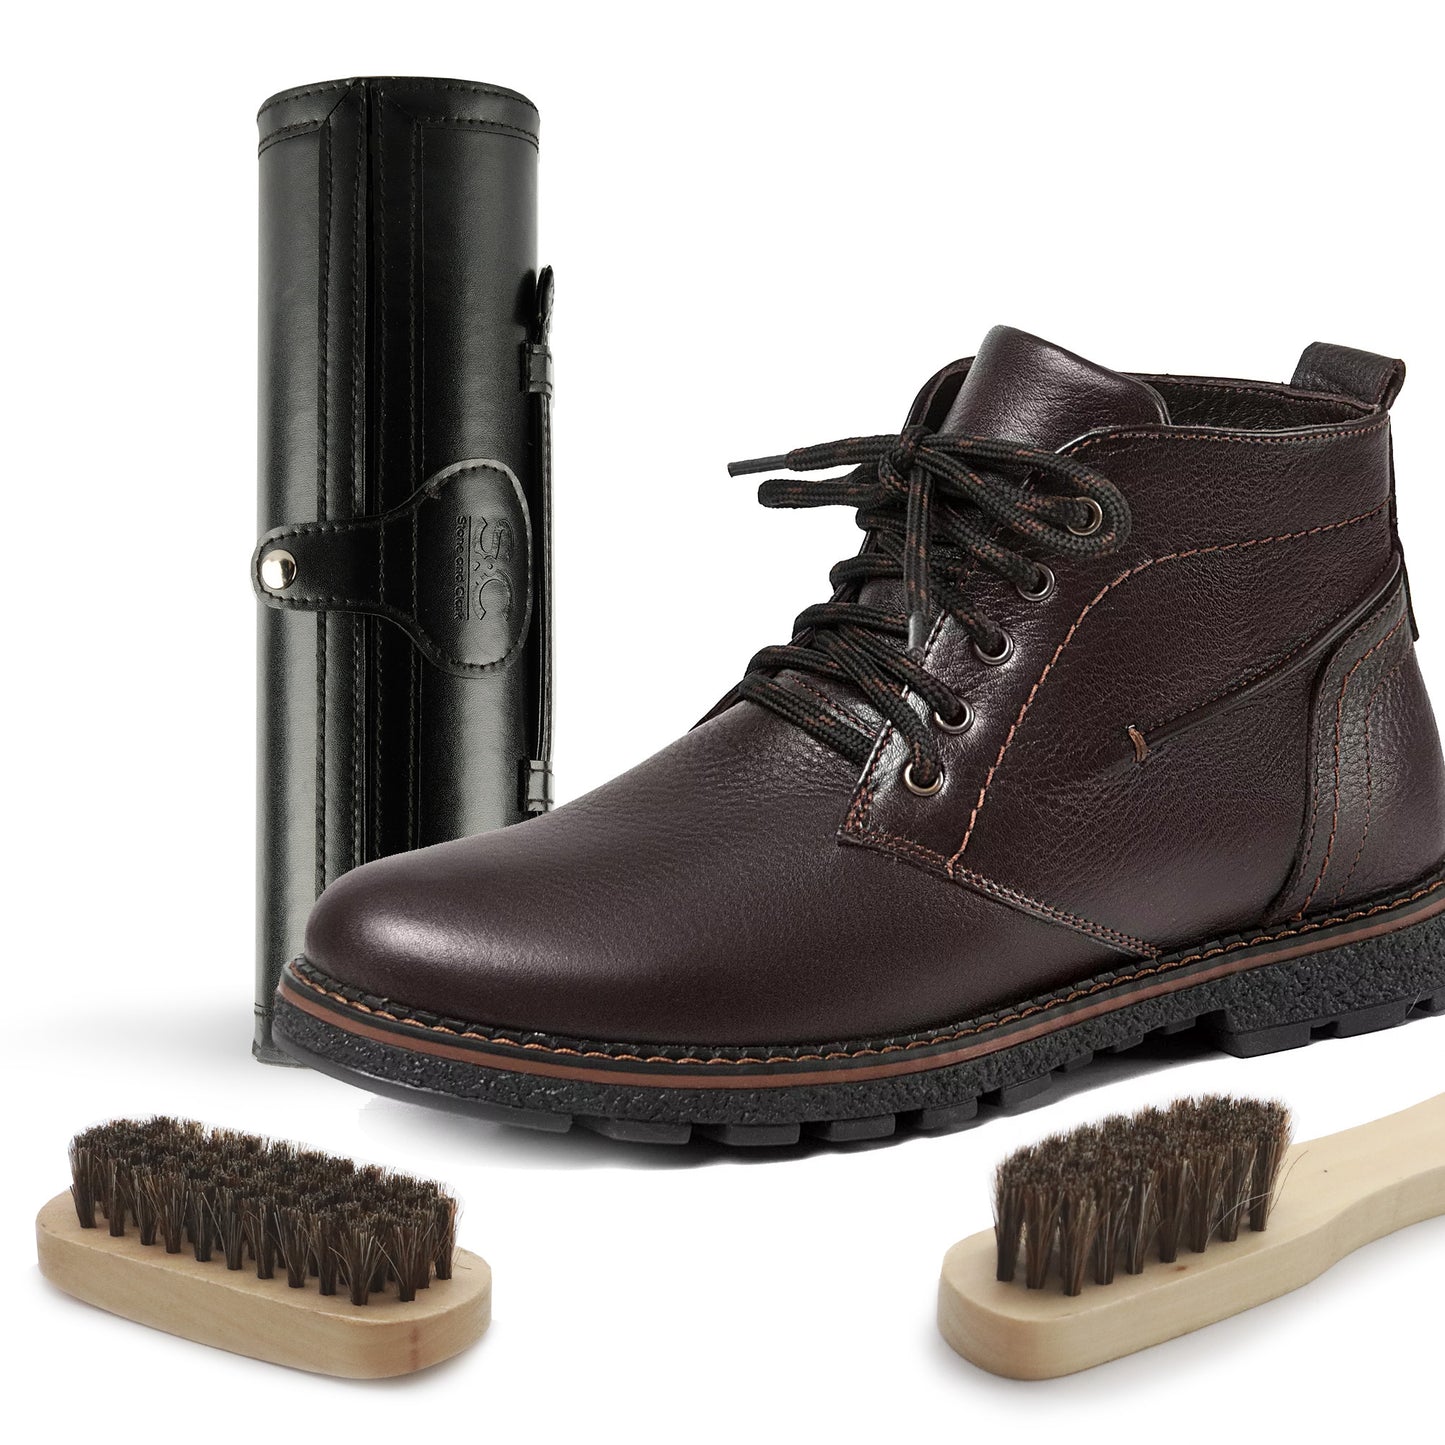 12PC Leather Shoe Shine & Care Kit for Men & Women